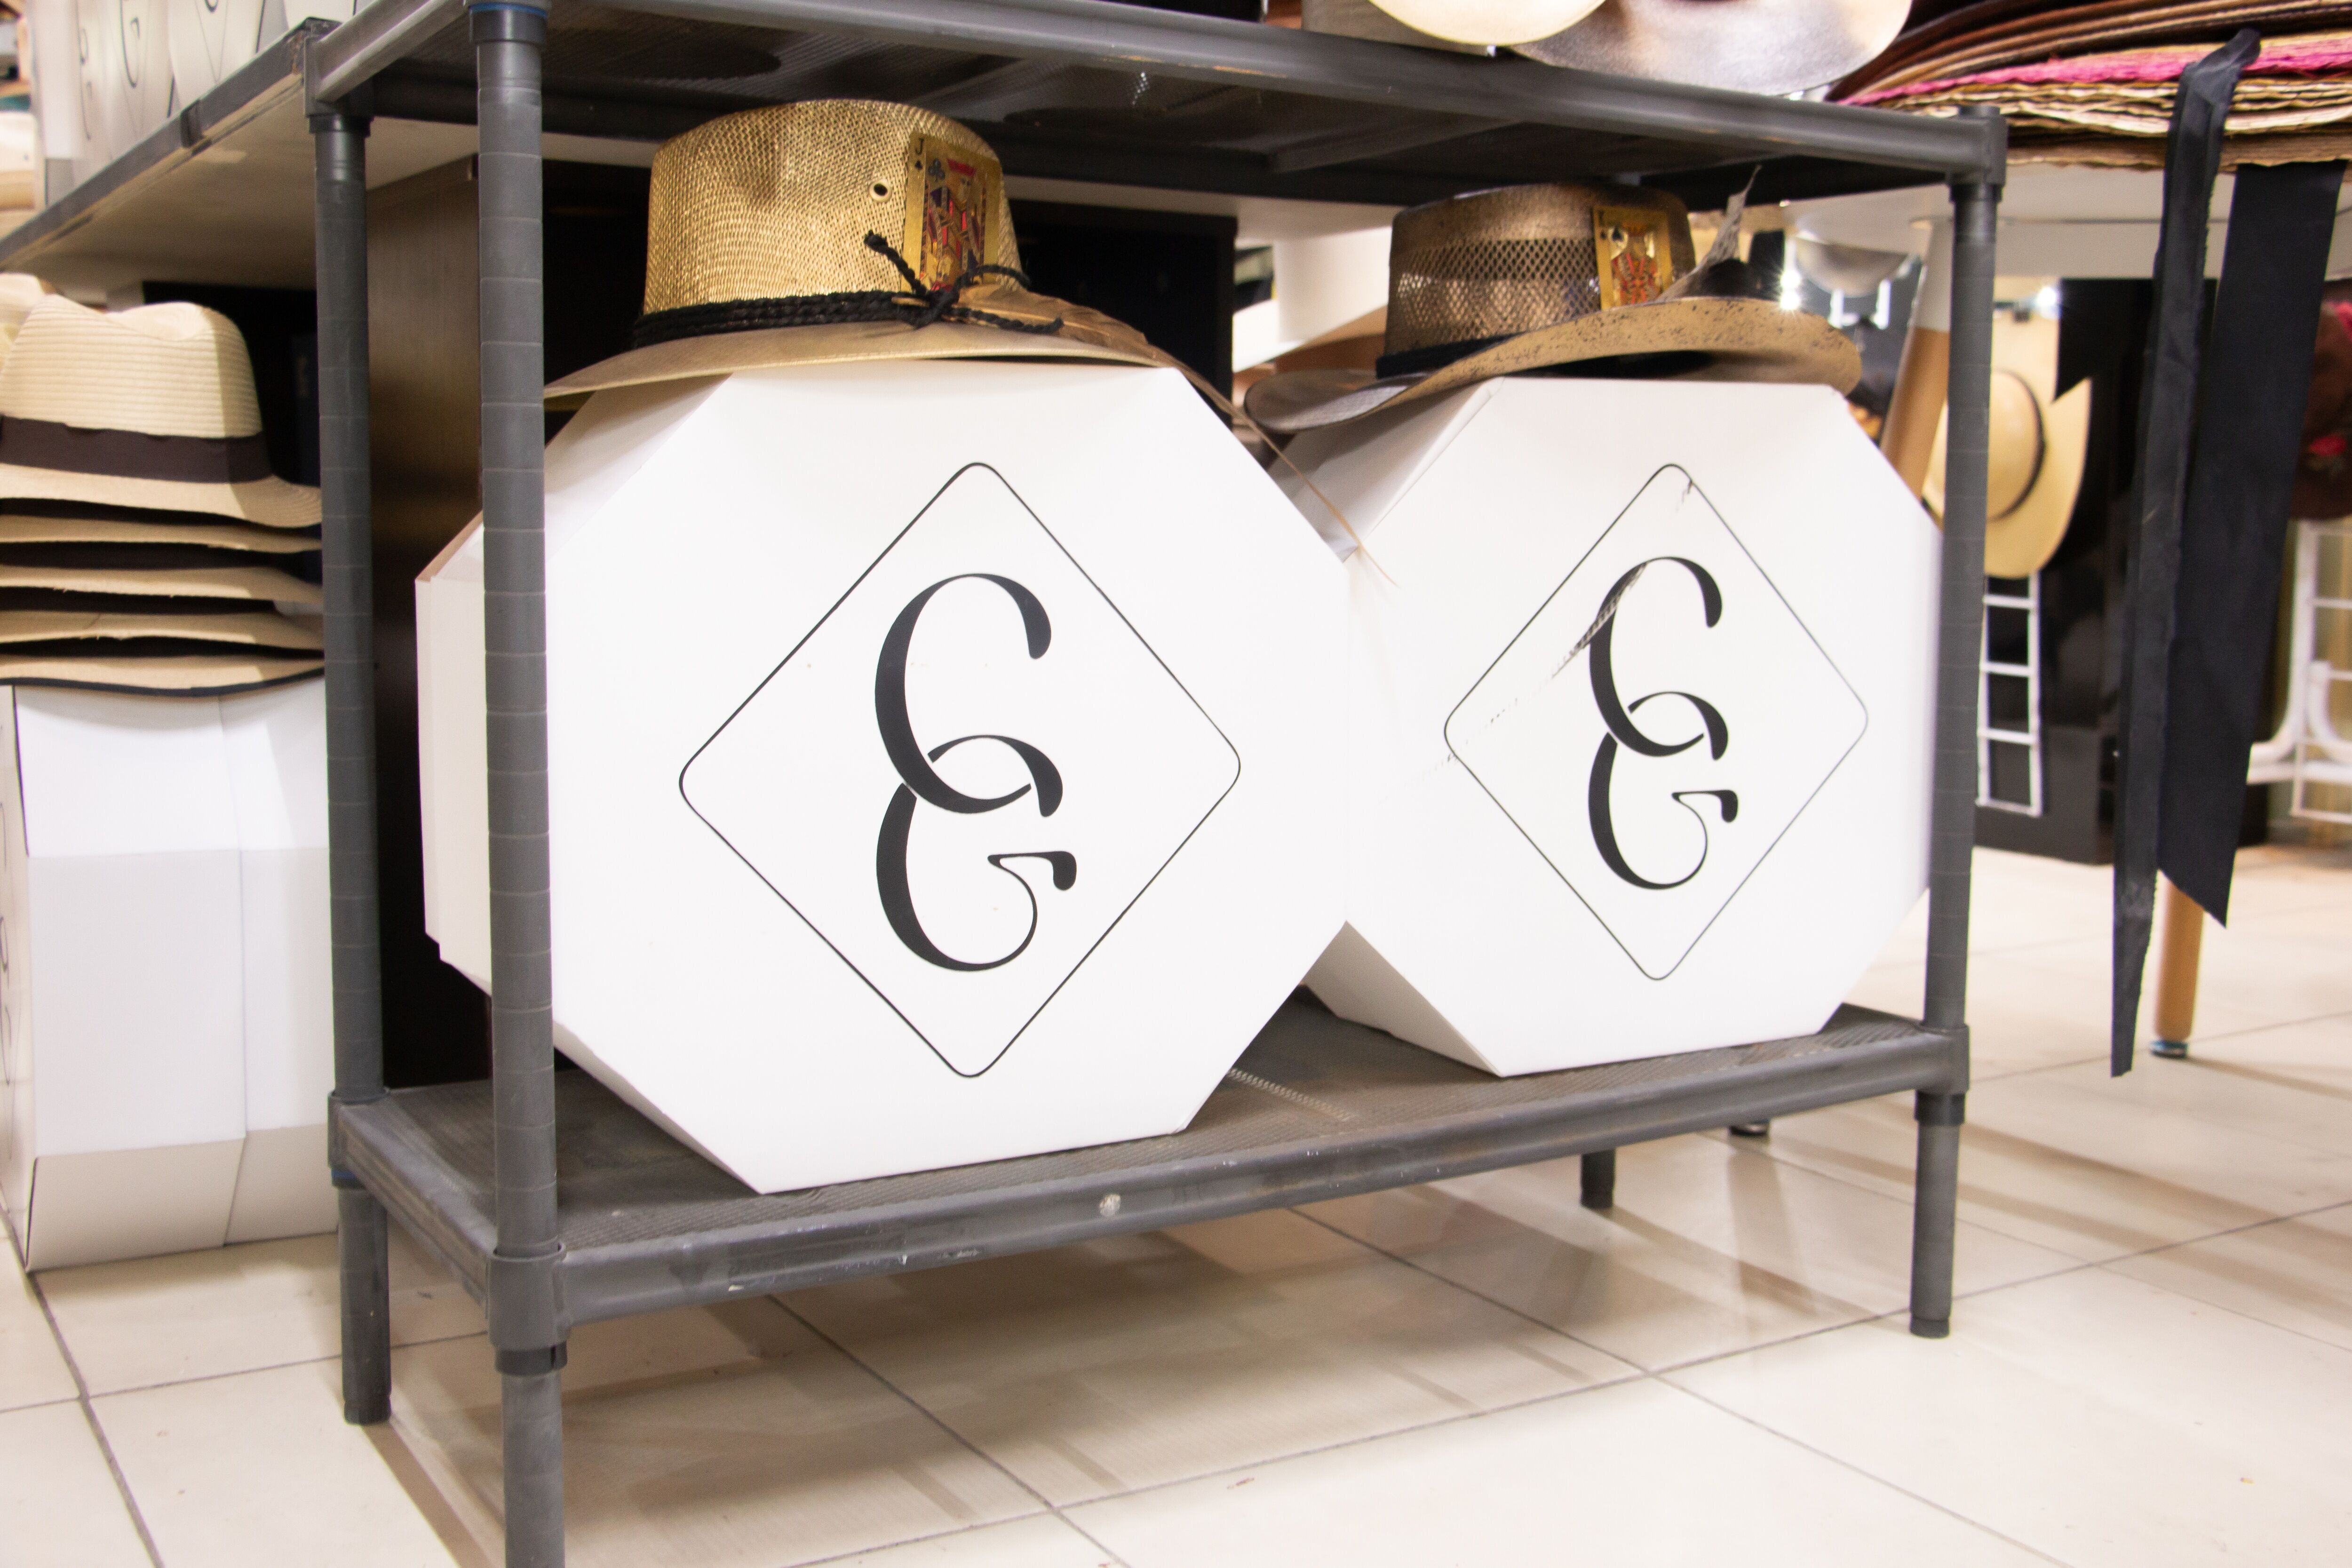 Una estantería ordenada en una tienda, mostrando varios estilos de sombreros dispuestos encima y cajas con logotipos de monograma estilosos debajo.